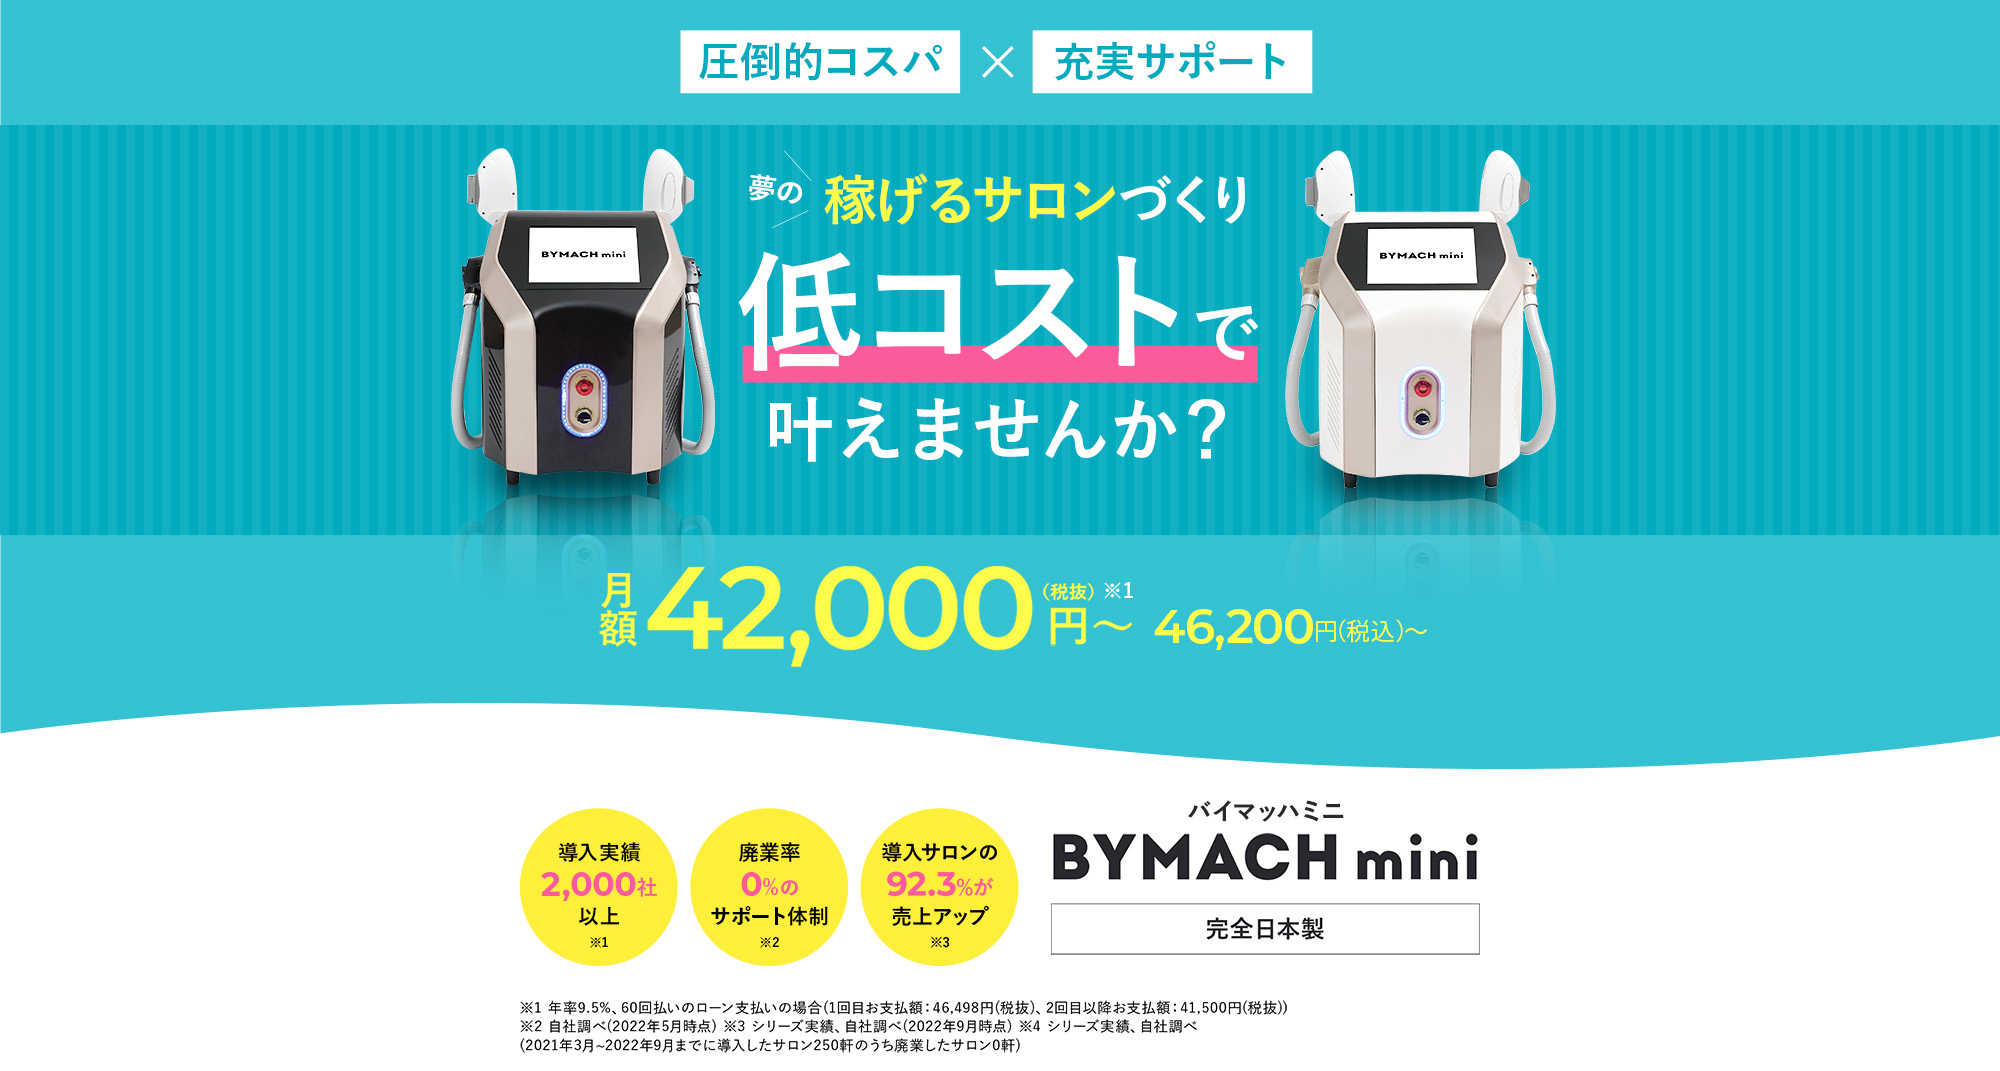 圧倒的コスパ×充実サポート 夢の稼げるサロンづくり 低コストで叶えませんか？ 月額42,000(税抜)~ 46,200円（税込）導入実績2,000社以上 廃業率0%のサポート体制 導入サロンの92.3%が売上アップ バイマッハミニ BYMACH mini 完全日本製